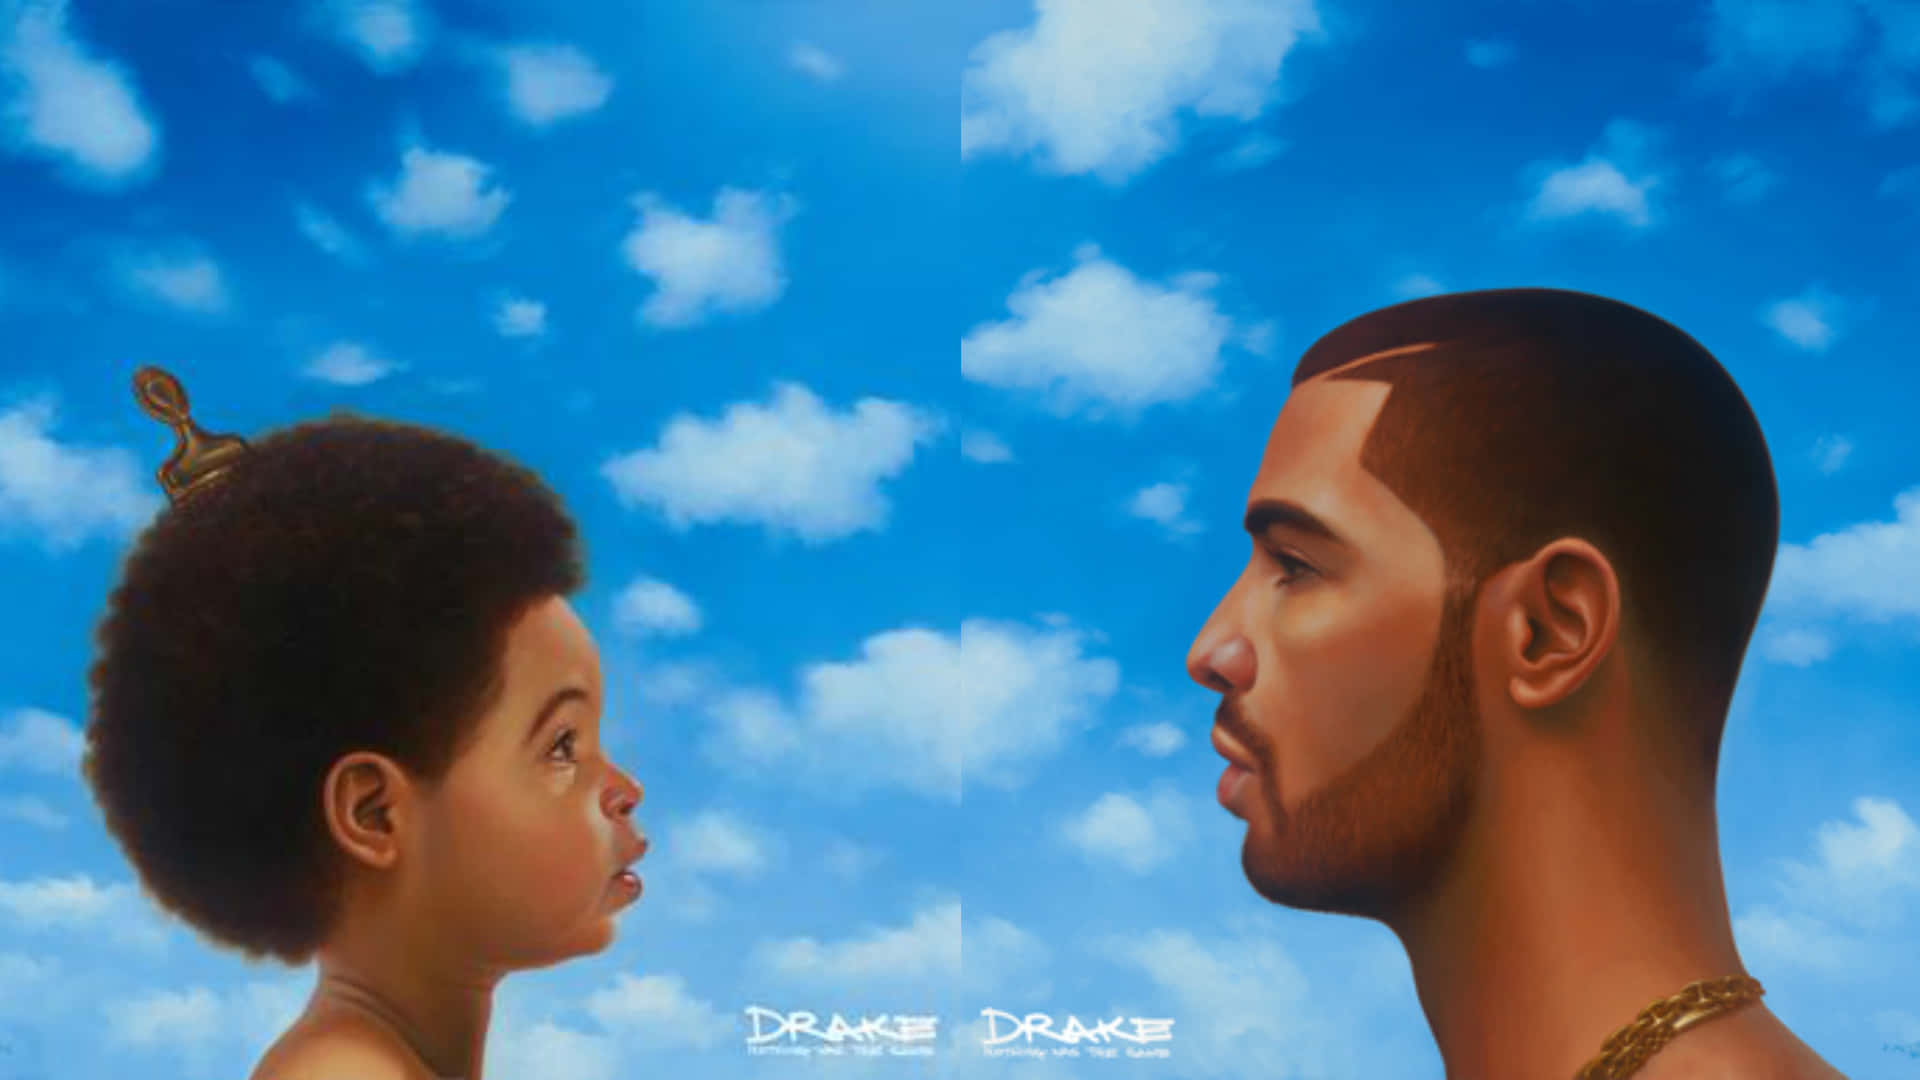 Drakebewirbt Sein Album 